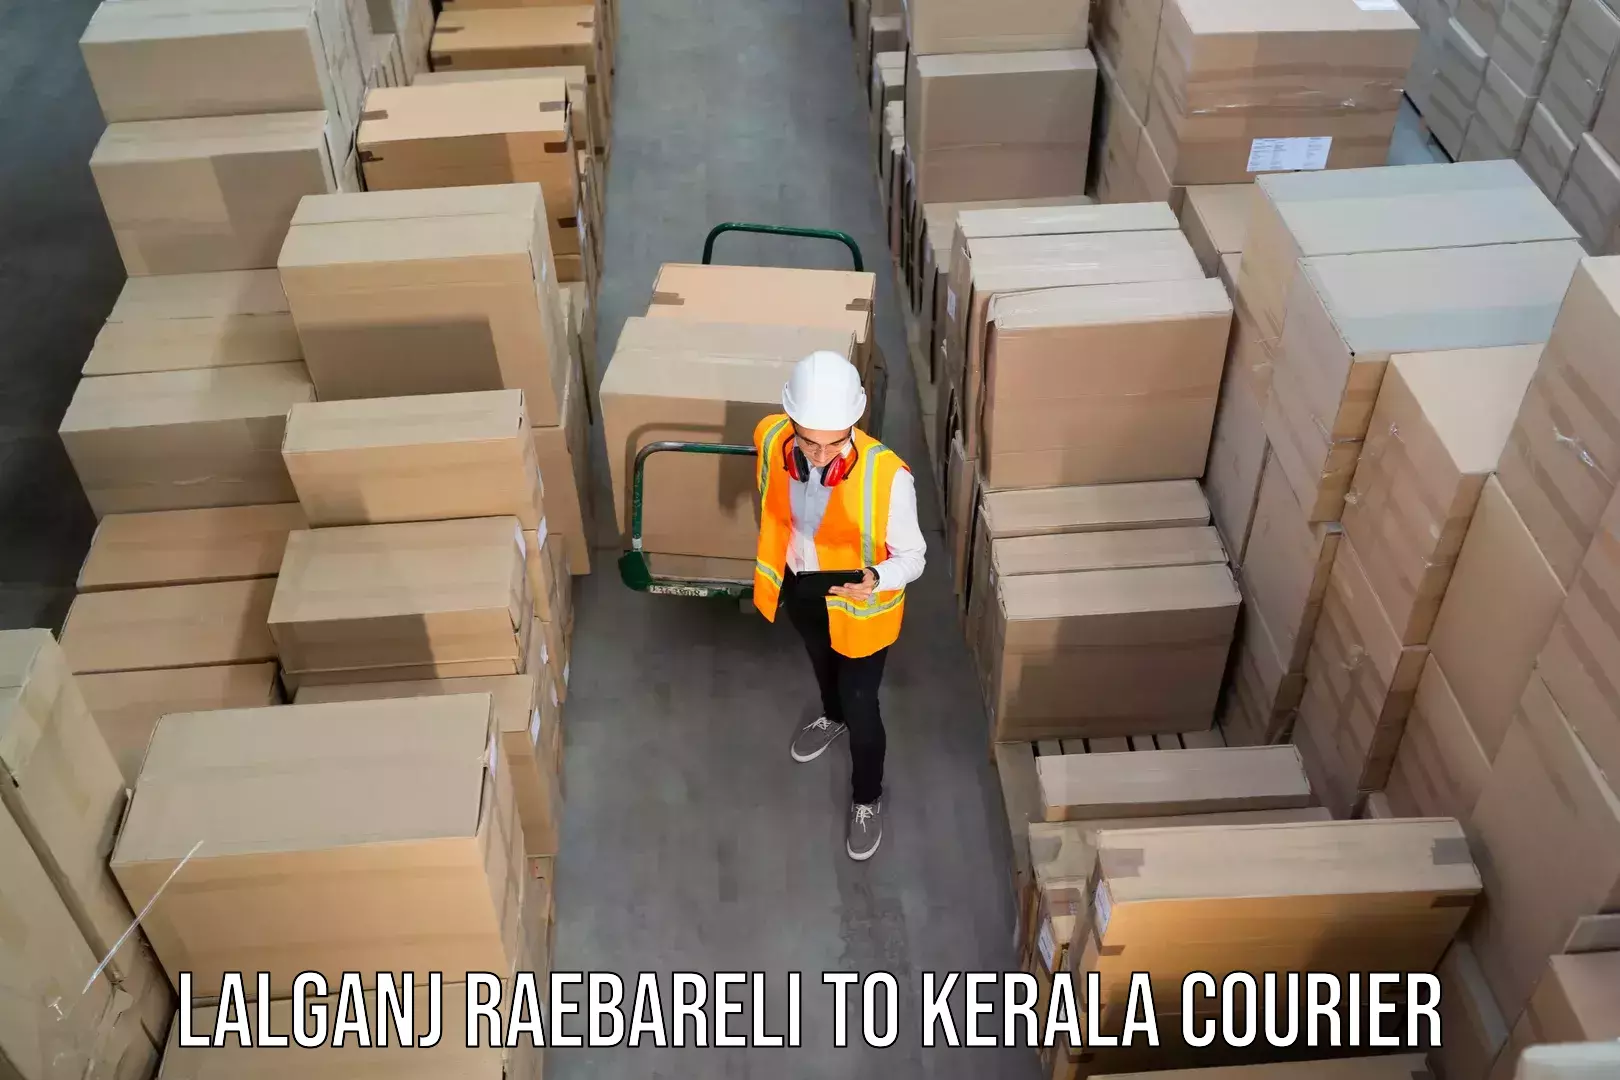 Courier app in Lalganj Raebareli to Kerala